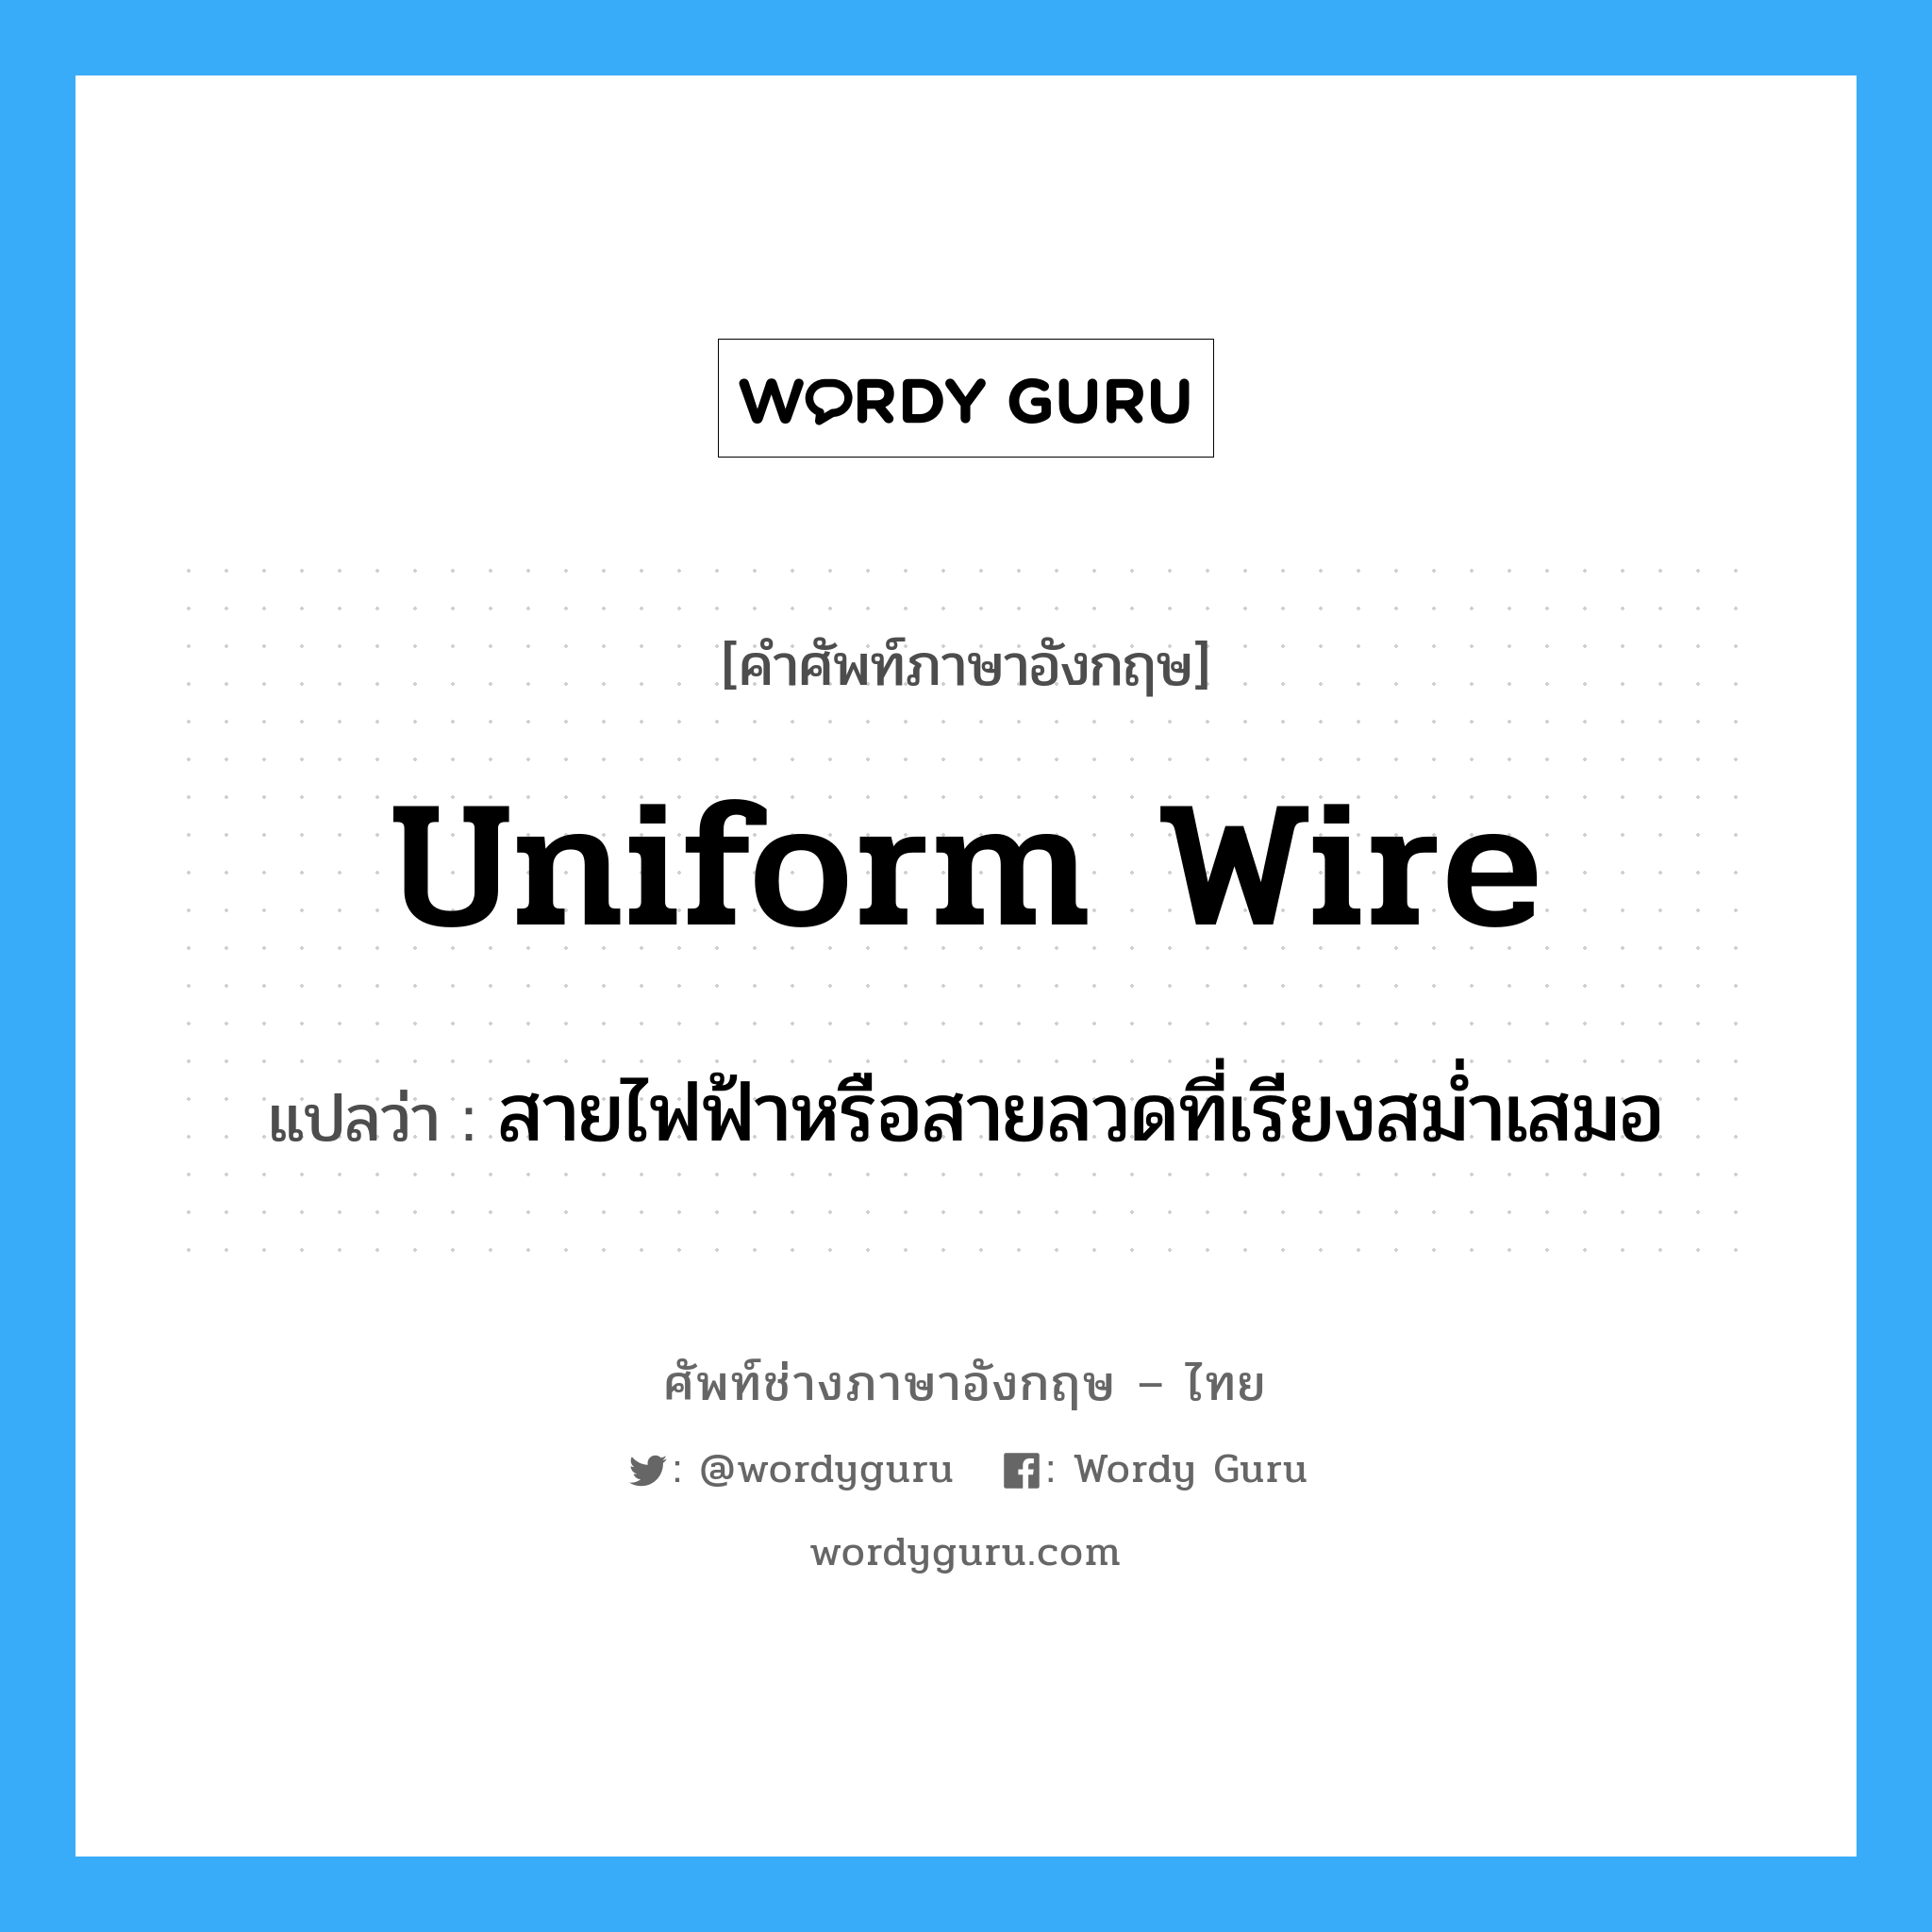 สายไฟฟ้าหรือสายลวดที่เรียงสม่ำเสมอ ภาษาอังกฤษ?, คำศัพท์ช่างภาษาอังกฤษ - ไทย สายไฟฟ้าหรือสายลวดที่เรียงสม่ำเสมอ คำศัพท์ภาษาอังกฤษ สายไฟฟ้าหรือสายลวดที่เรียงสม่ำเสมอ แปลว่า uniform wire